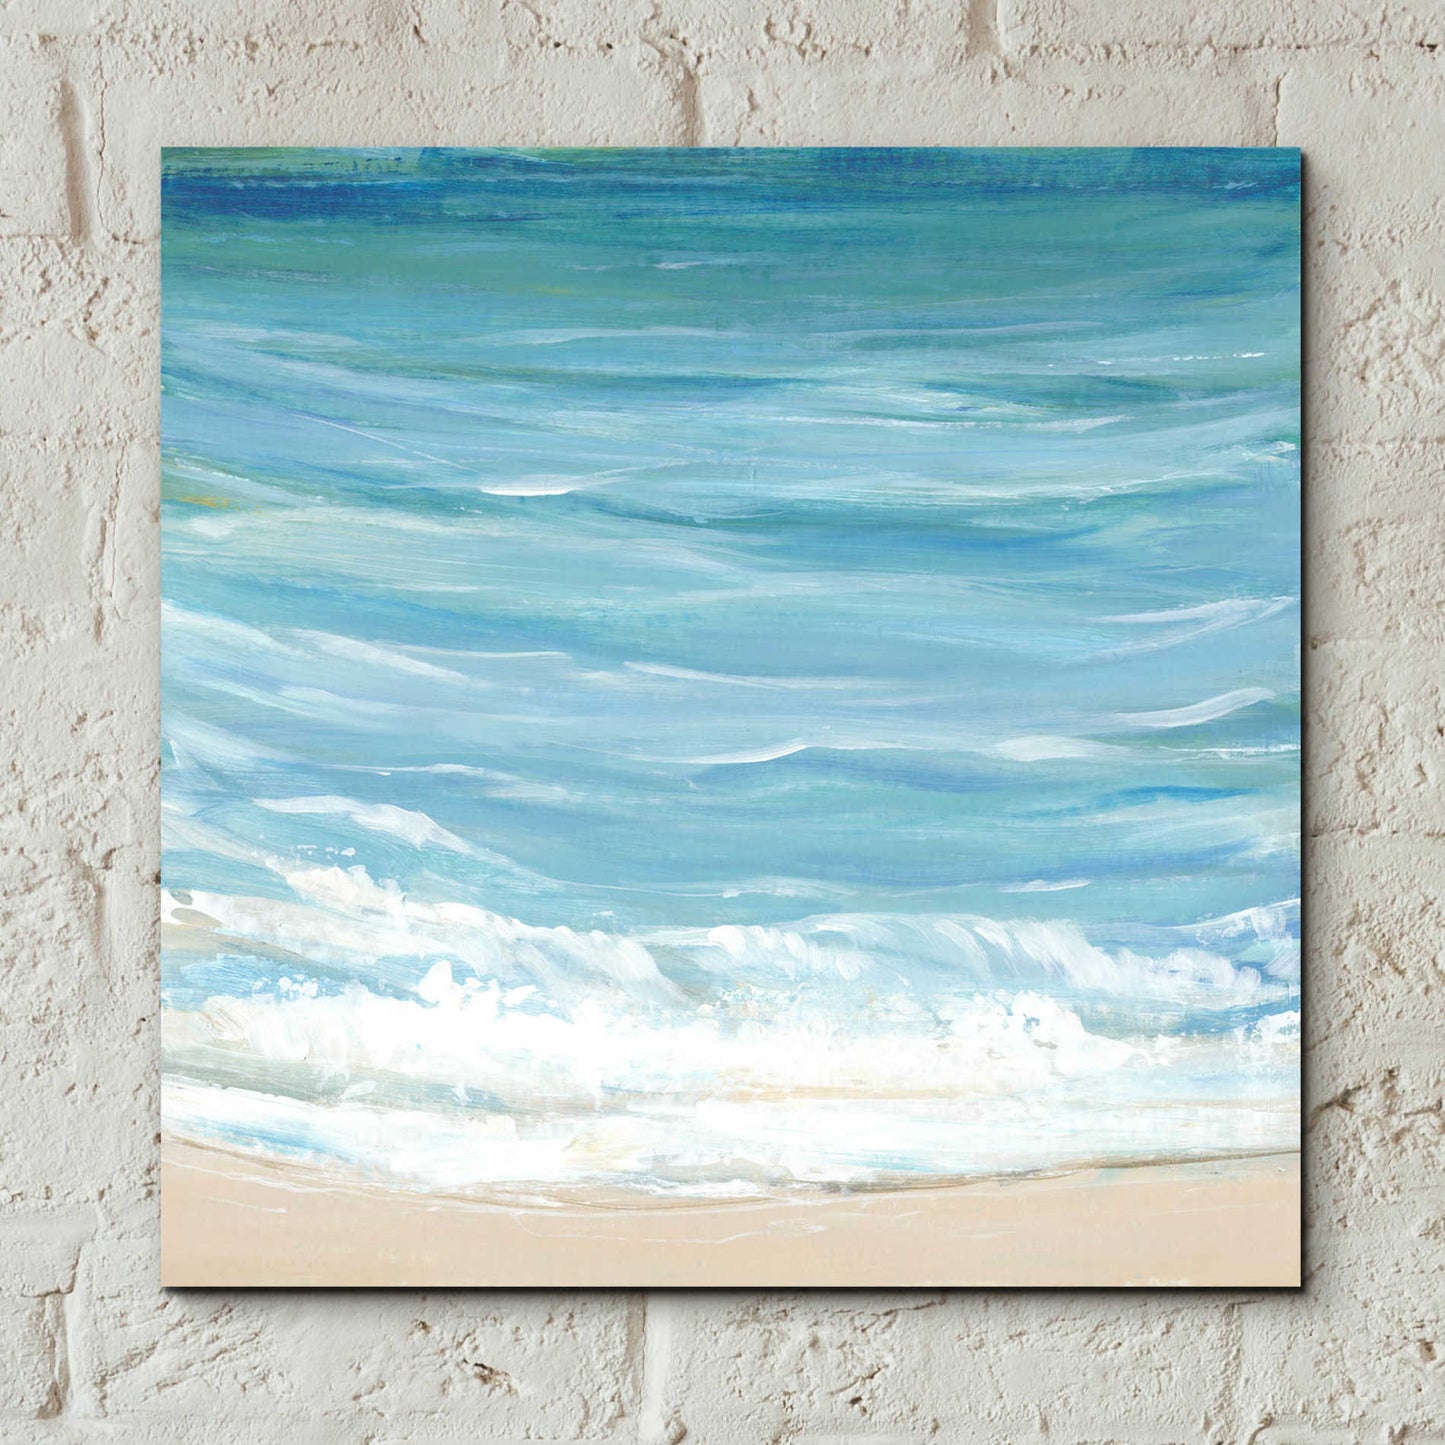 Epic Art 'Sea Breeze Coast I' by Tim O'Toole, Acrylic Glass Wall Art,12x12